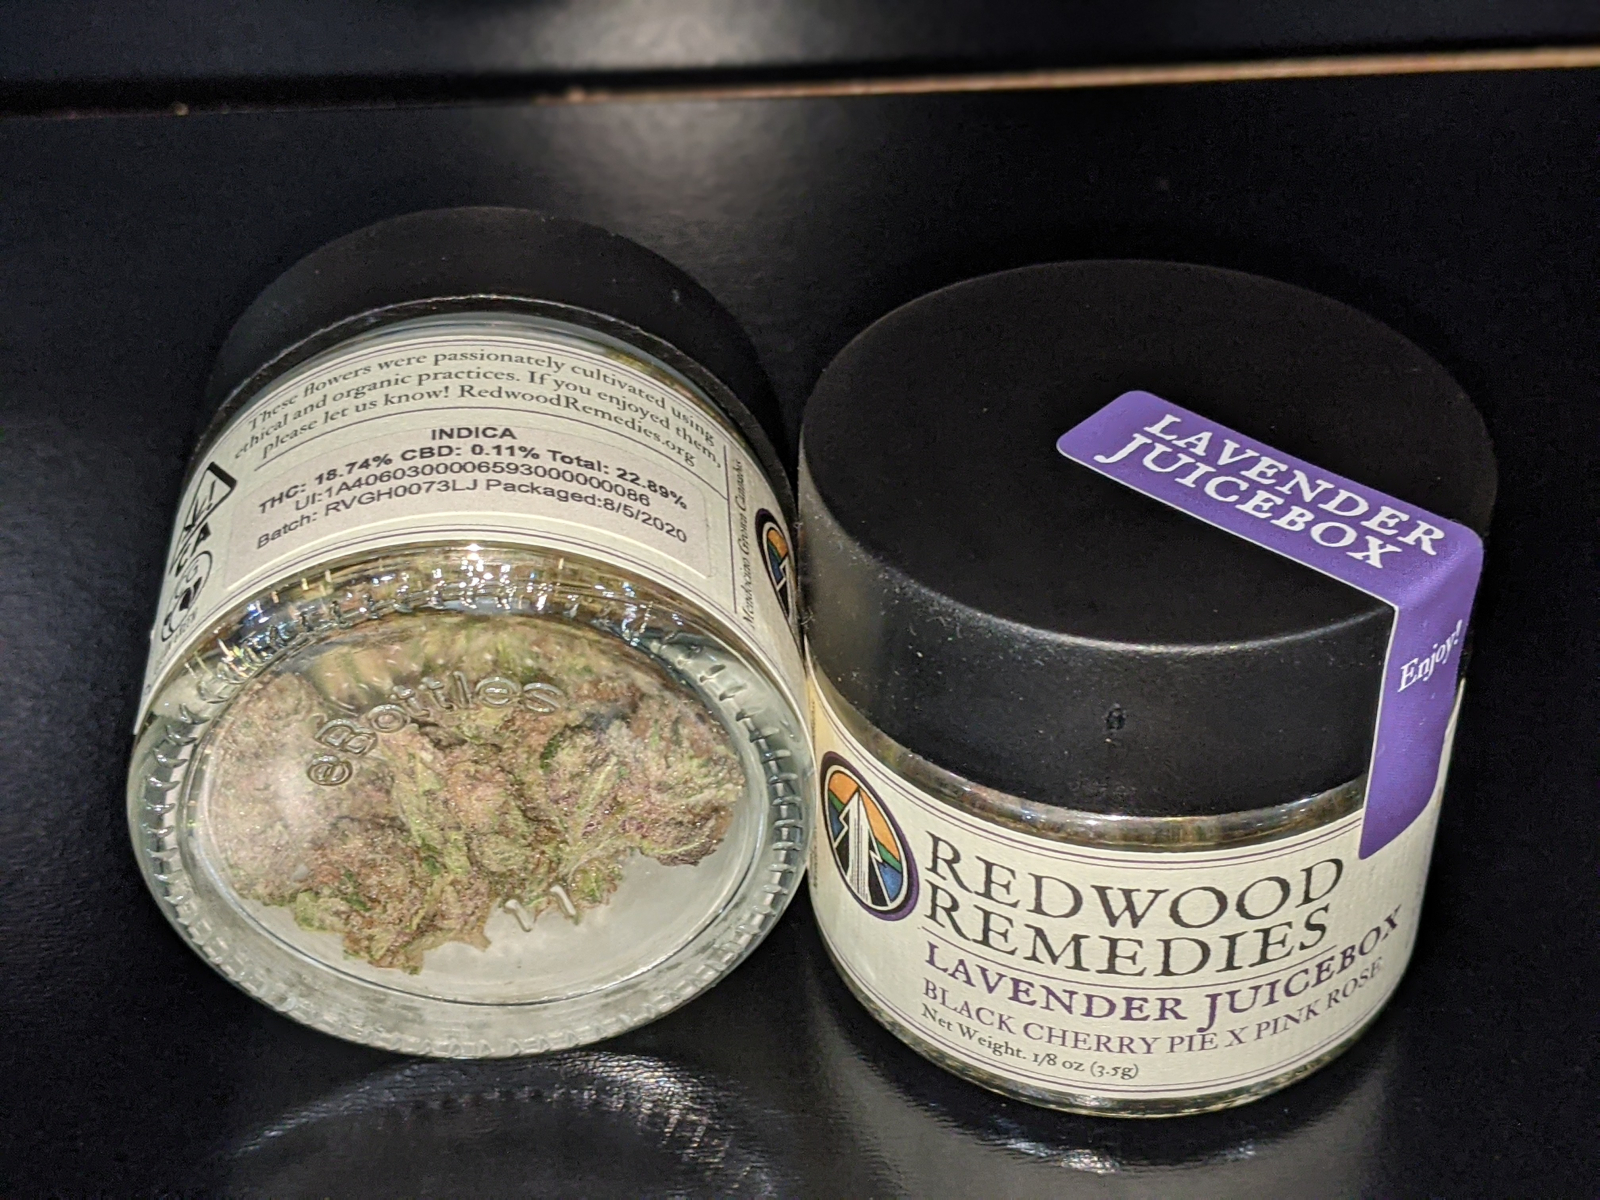 Redwood Remedies Lavender Juicebox 1/8th